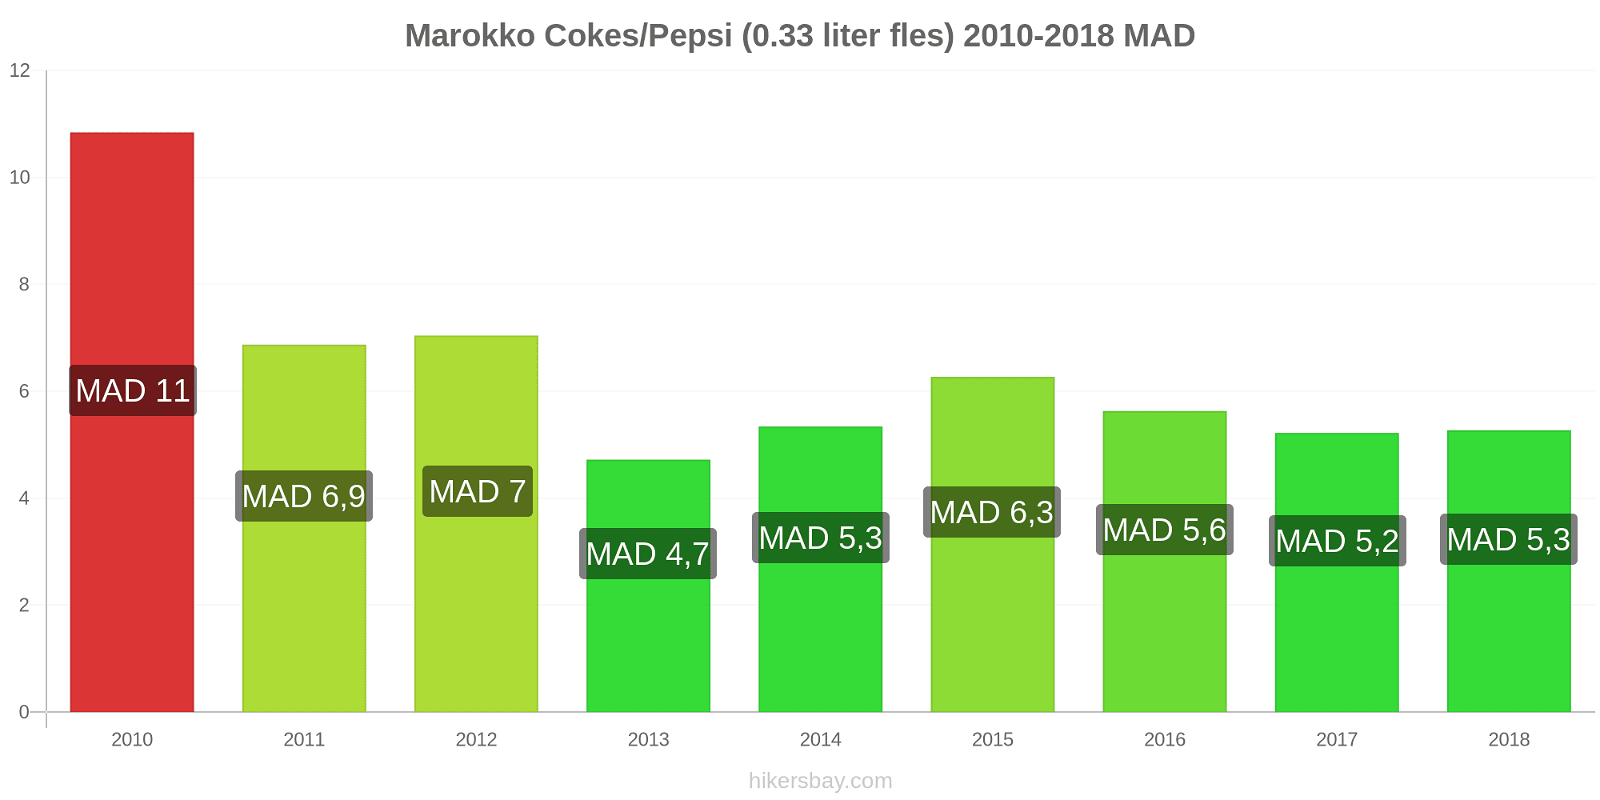 Marokko prijswijzigingen Cokes/Pepsi (0,33 literfles) hikersbay.com